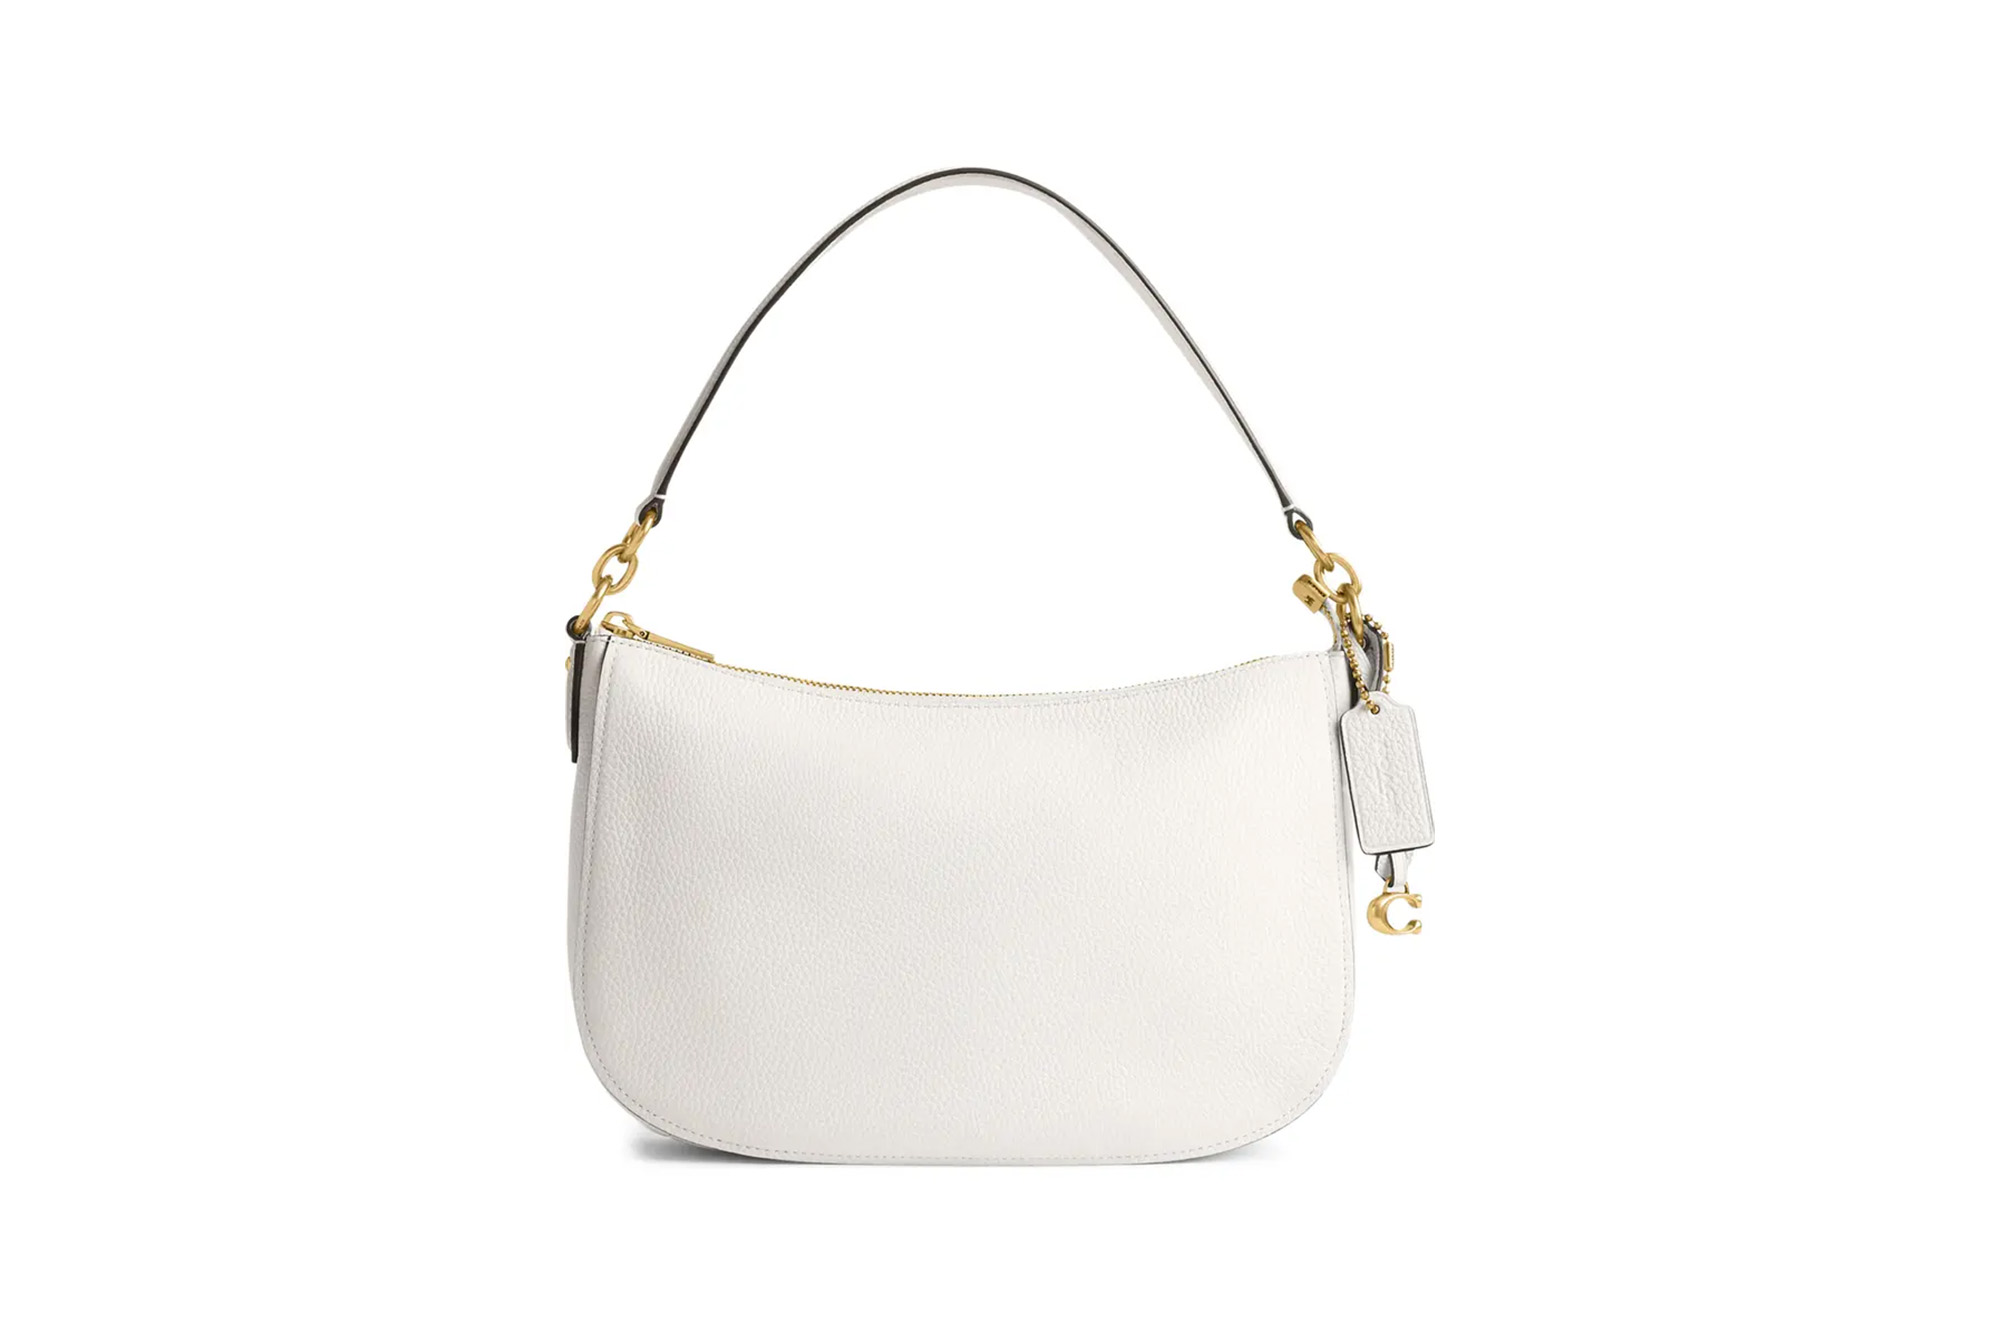 A white Coach purse